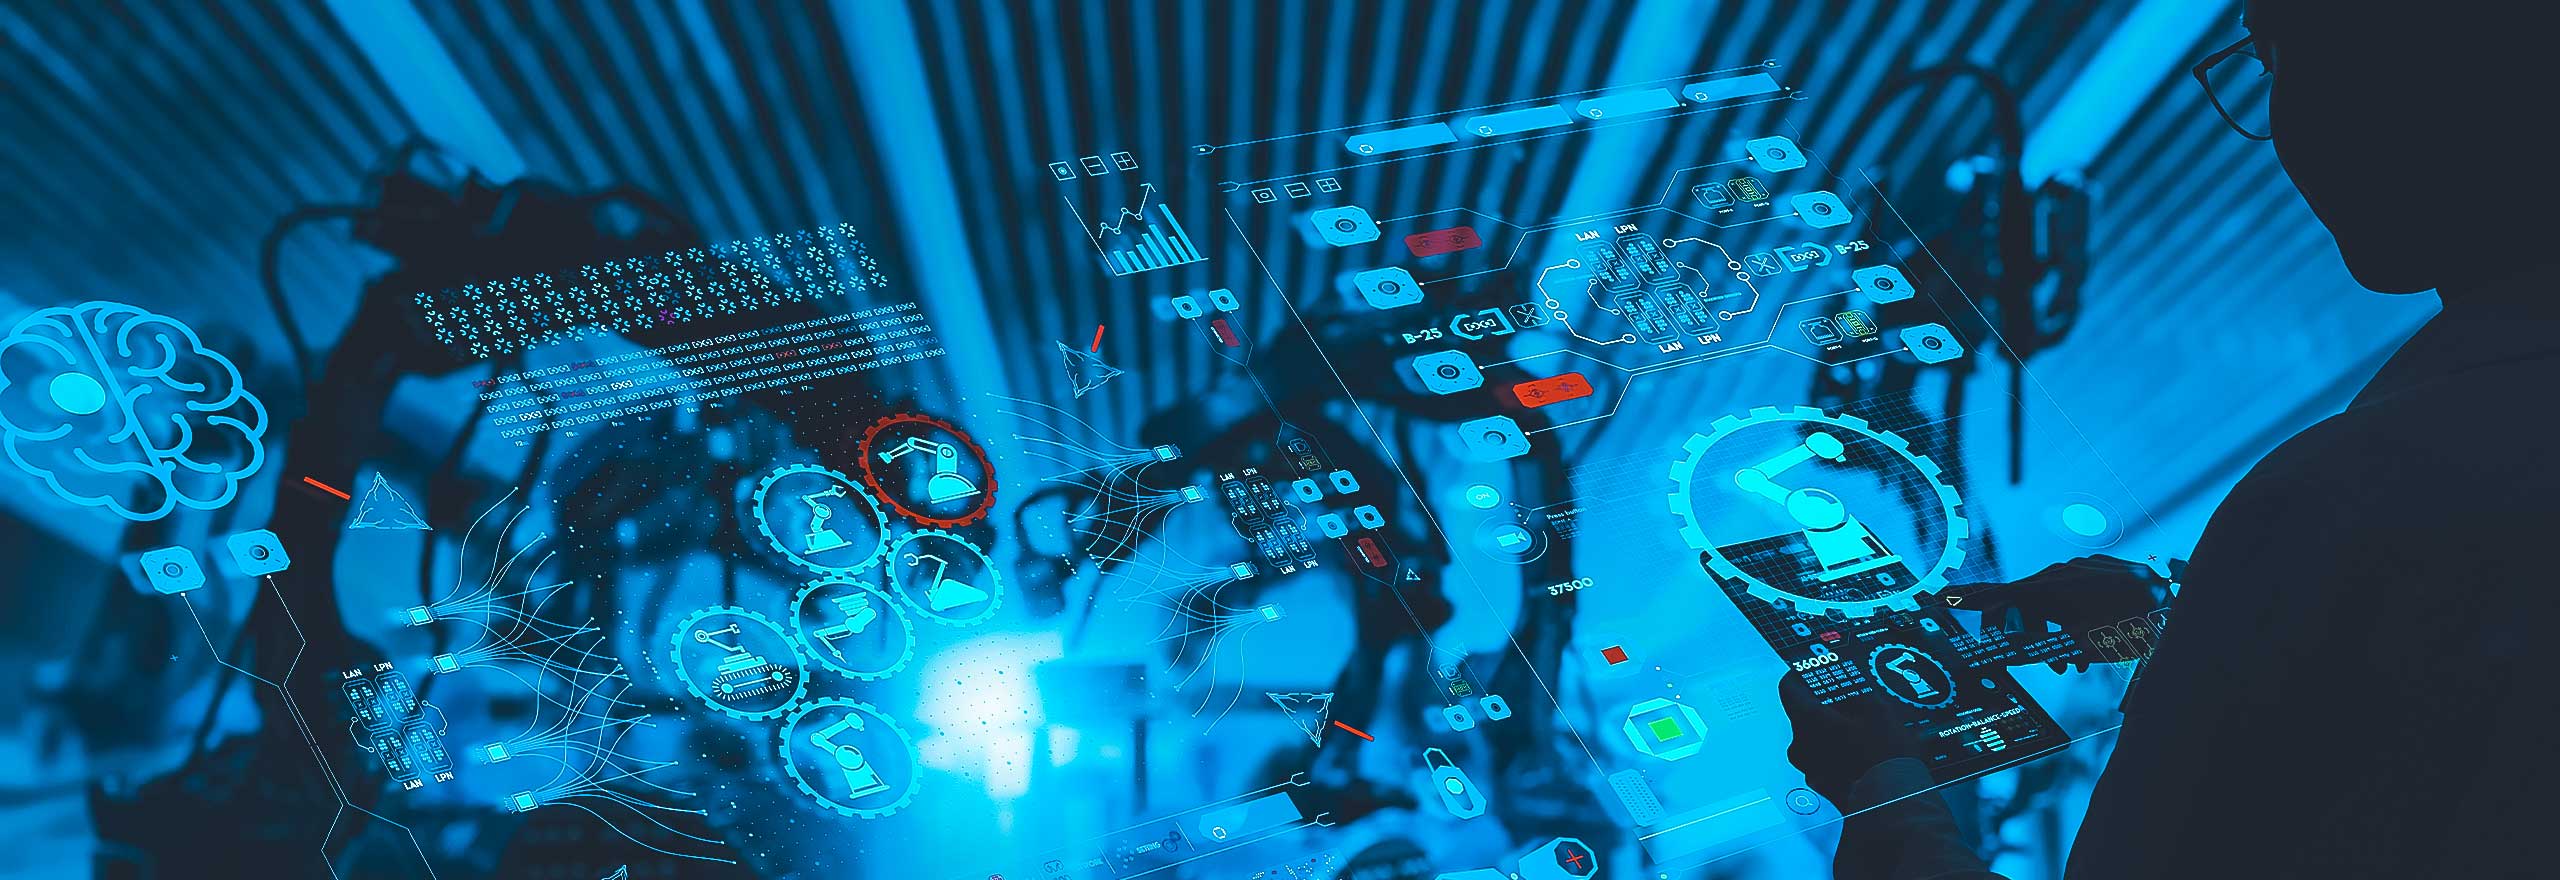 Сотрудник завода смотрит в планшет. Изображение с наложенными цифровыми элементами на планшете и с аналитикой в воздухе.